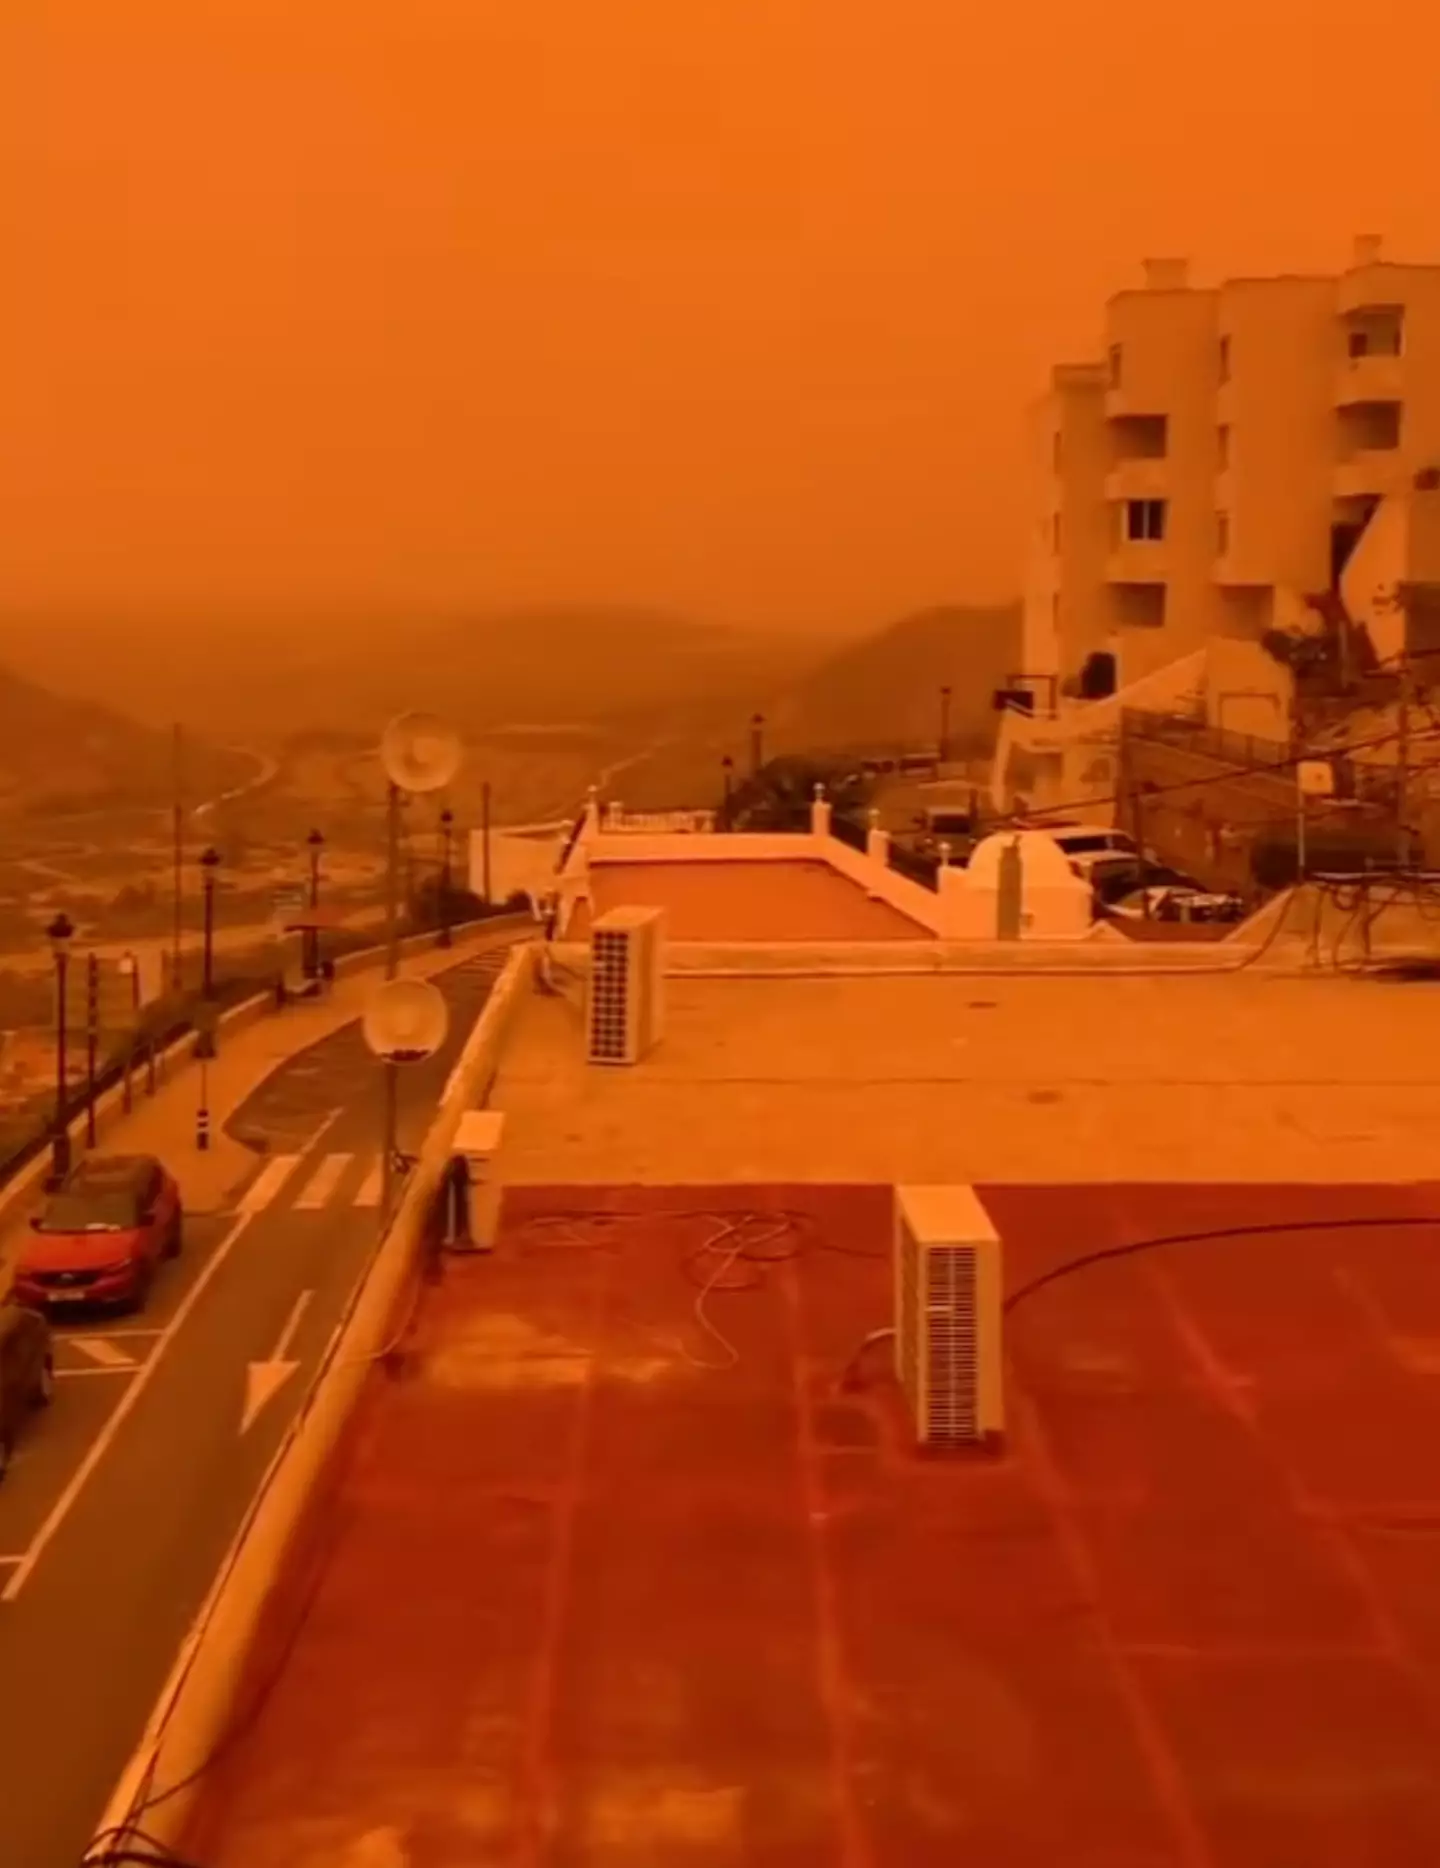 Skies in parts of Spain were turned orange by Storm Celia.